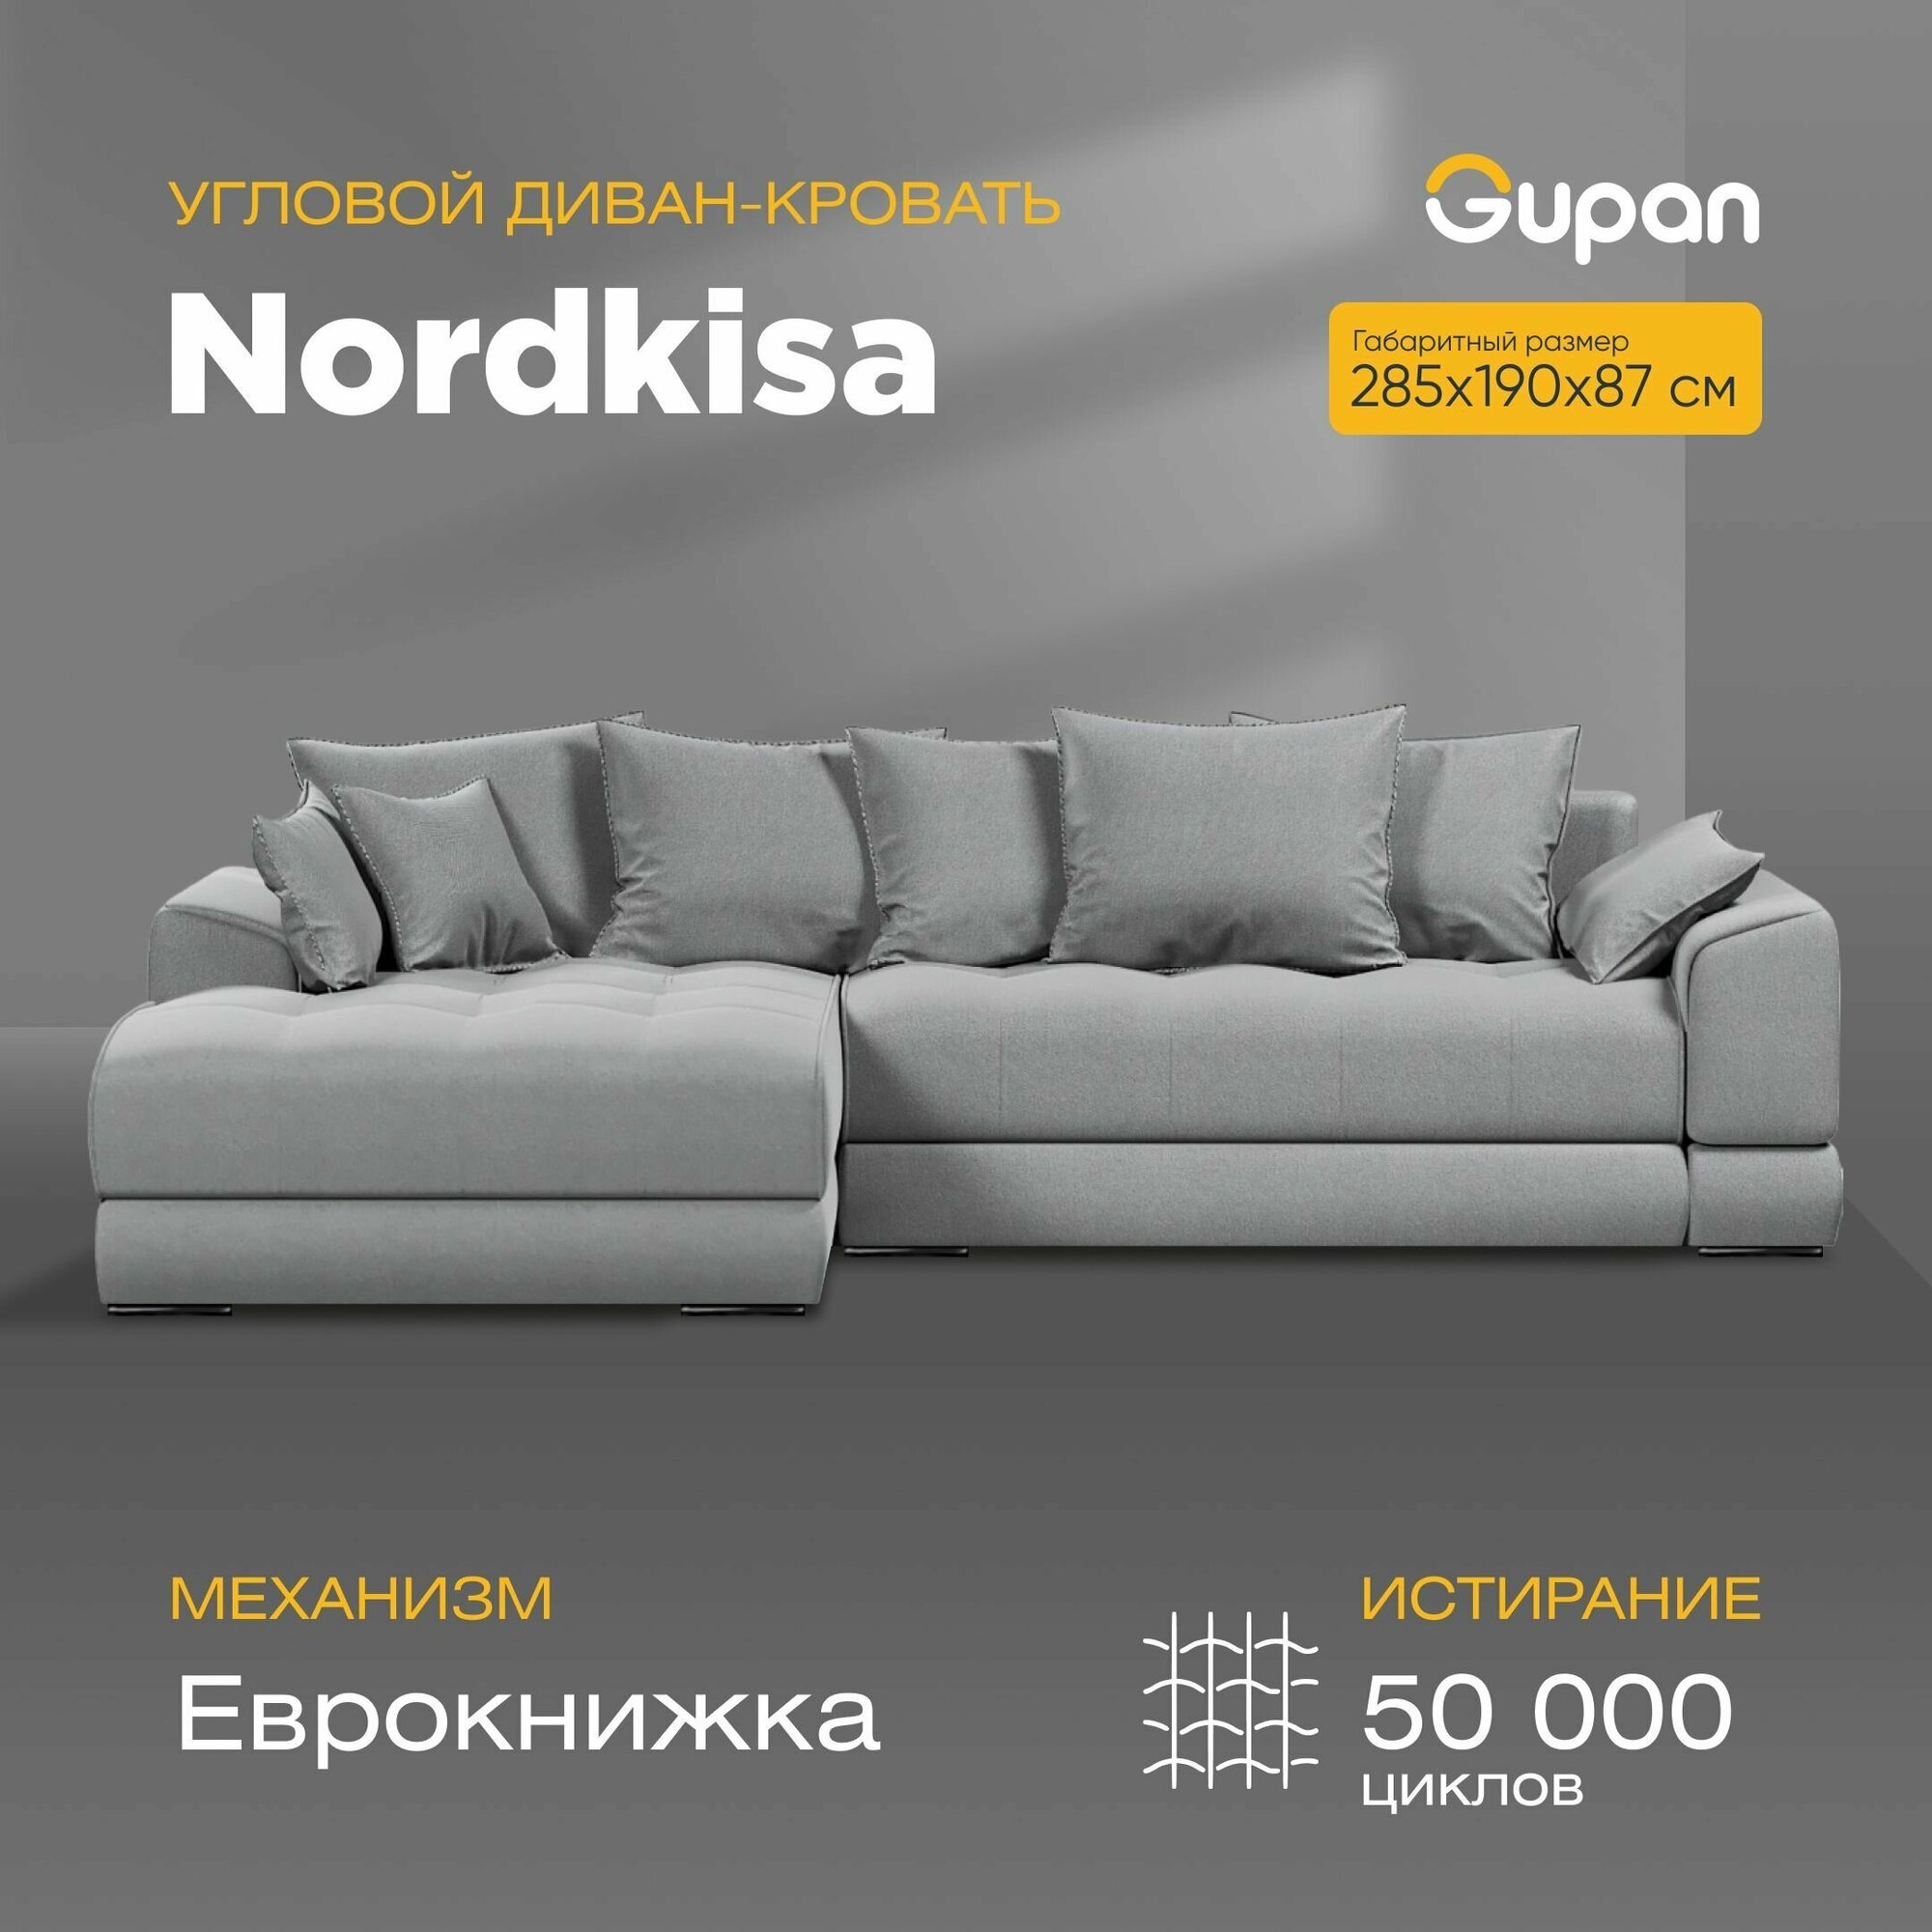 Угловой диван-кровать Gupan Nordkisa, механизм Еврокнижка, 285х190х87 см, наполнитель ППУ, ящик для белья, цвет Amigo Grey, угол слева